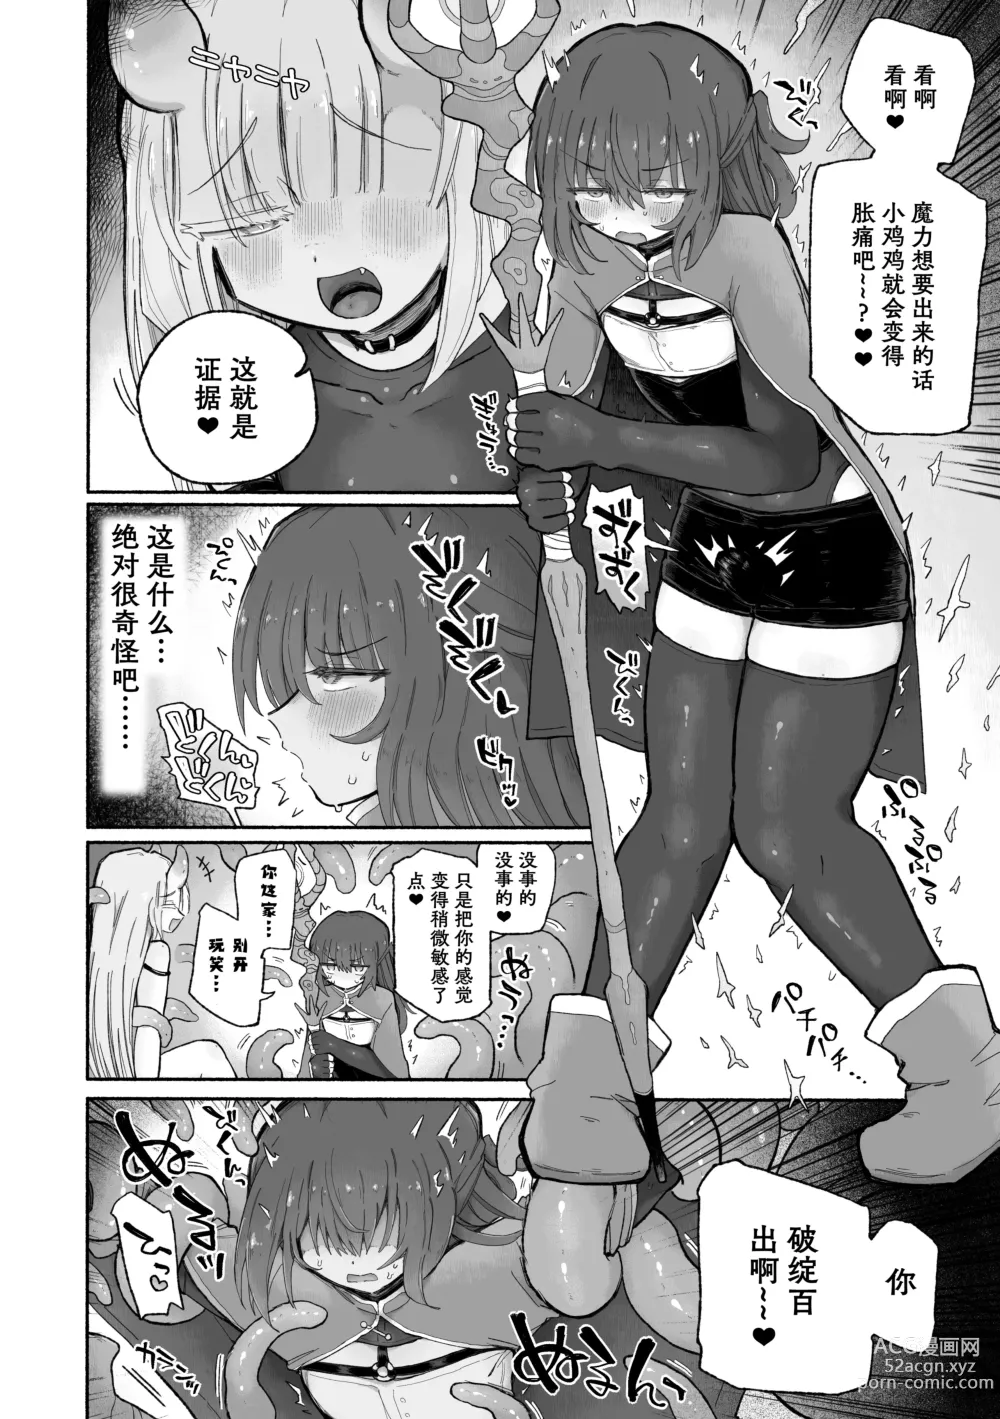 Page 9 of doujinshi Do hamari chui no kyosei danjon! 〜Mugen shasei no kairaku jigoku e yokoso〜